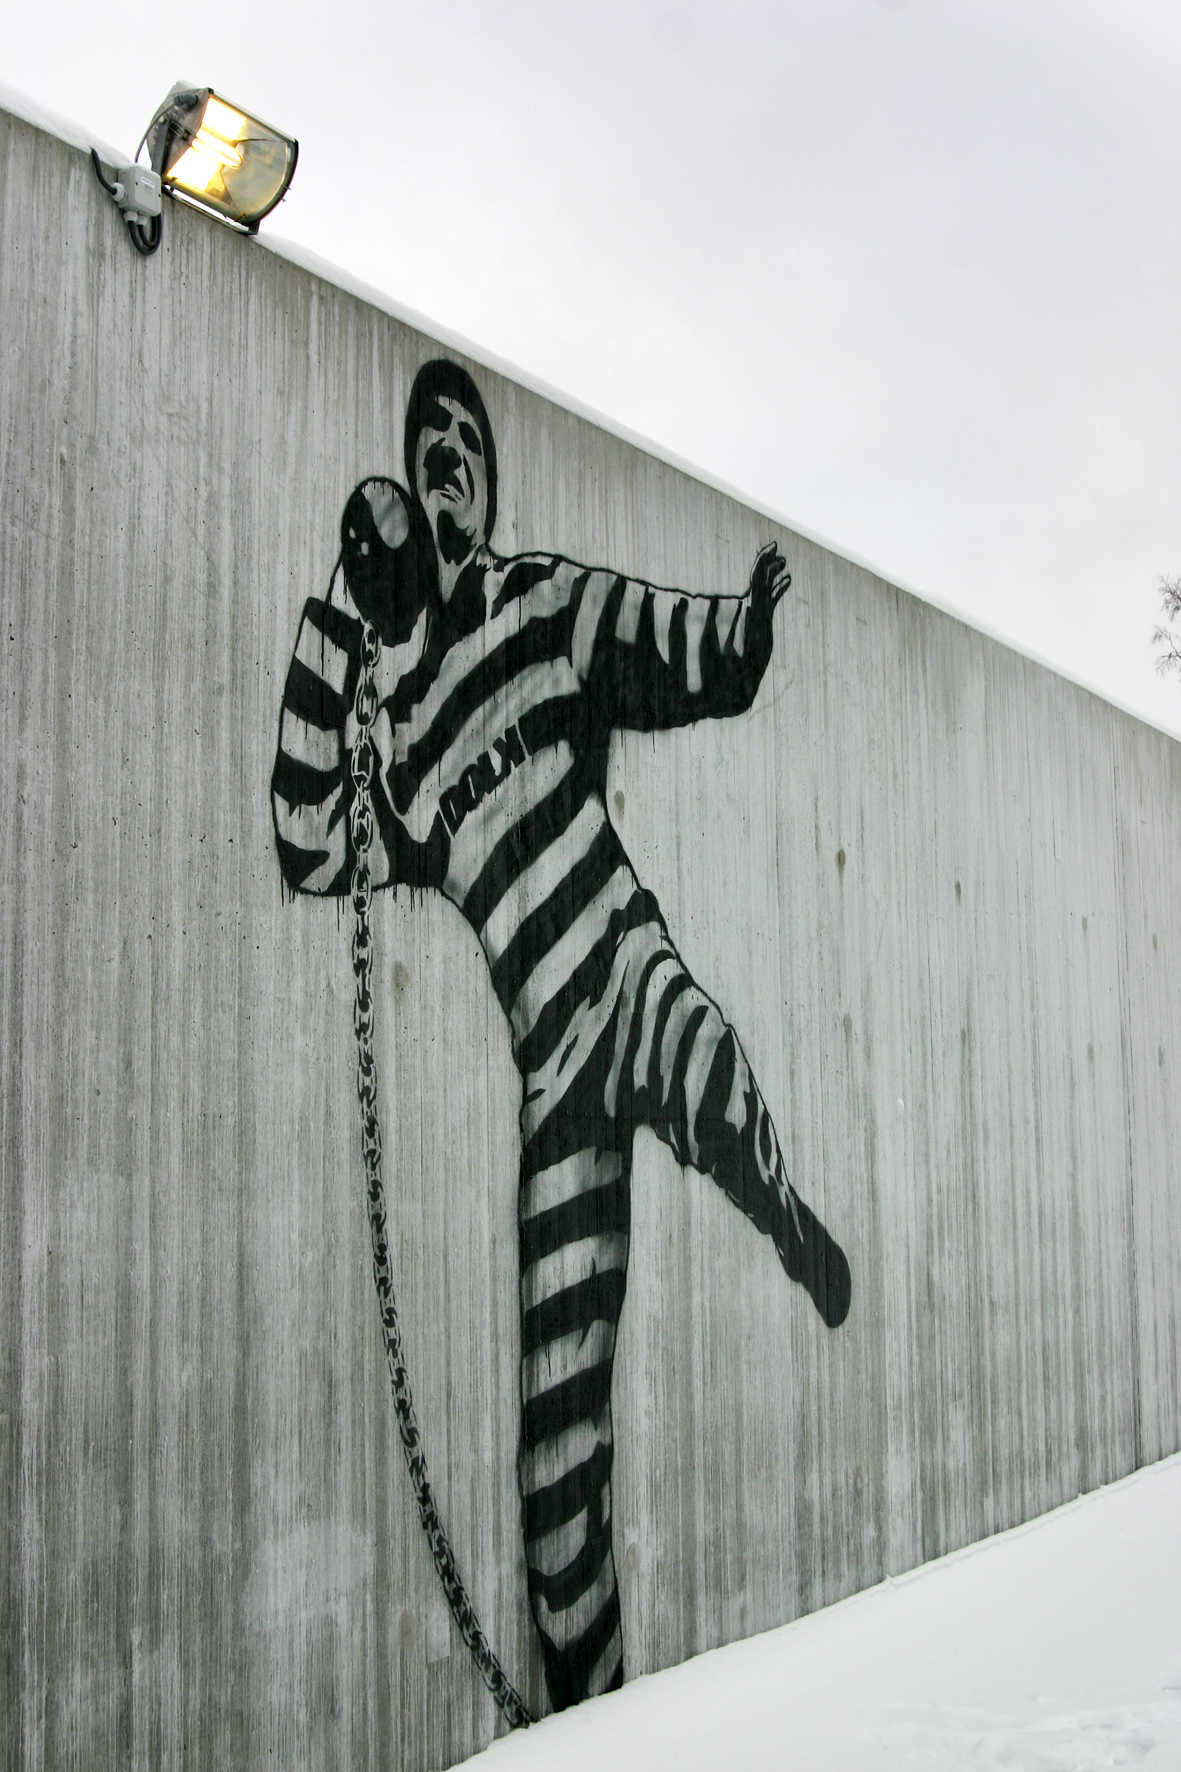 Graffiti_by_Dolk_in_Halden_prison